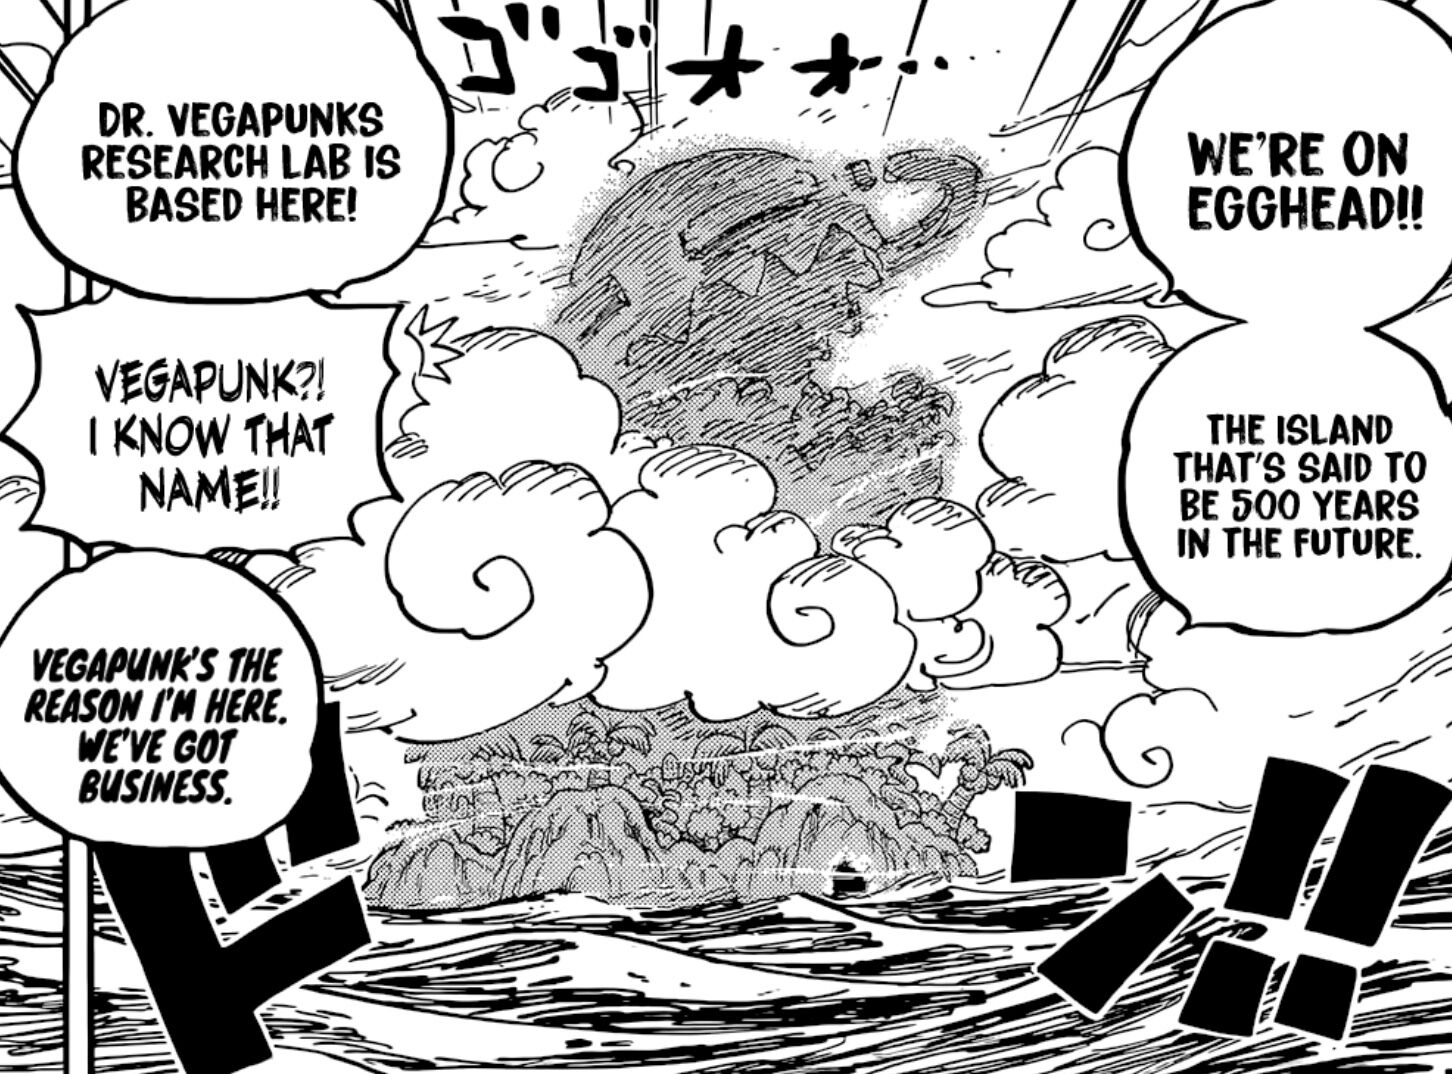 Kapitel 1061 - Insel der Zukunft, Egghead - Seite 4 - One Piece Weekly  Jump Kapitel - Pirateboard - Das One Piece Forum